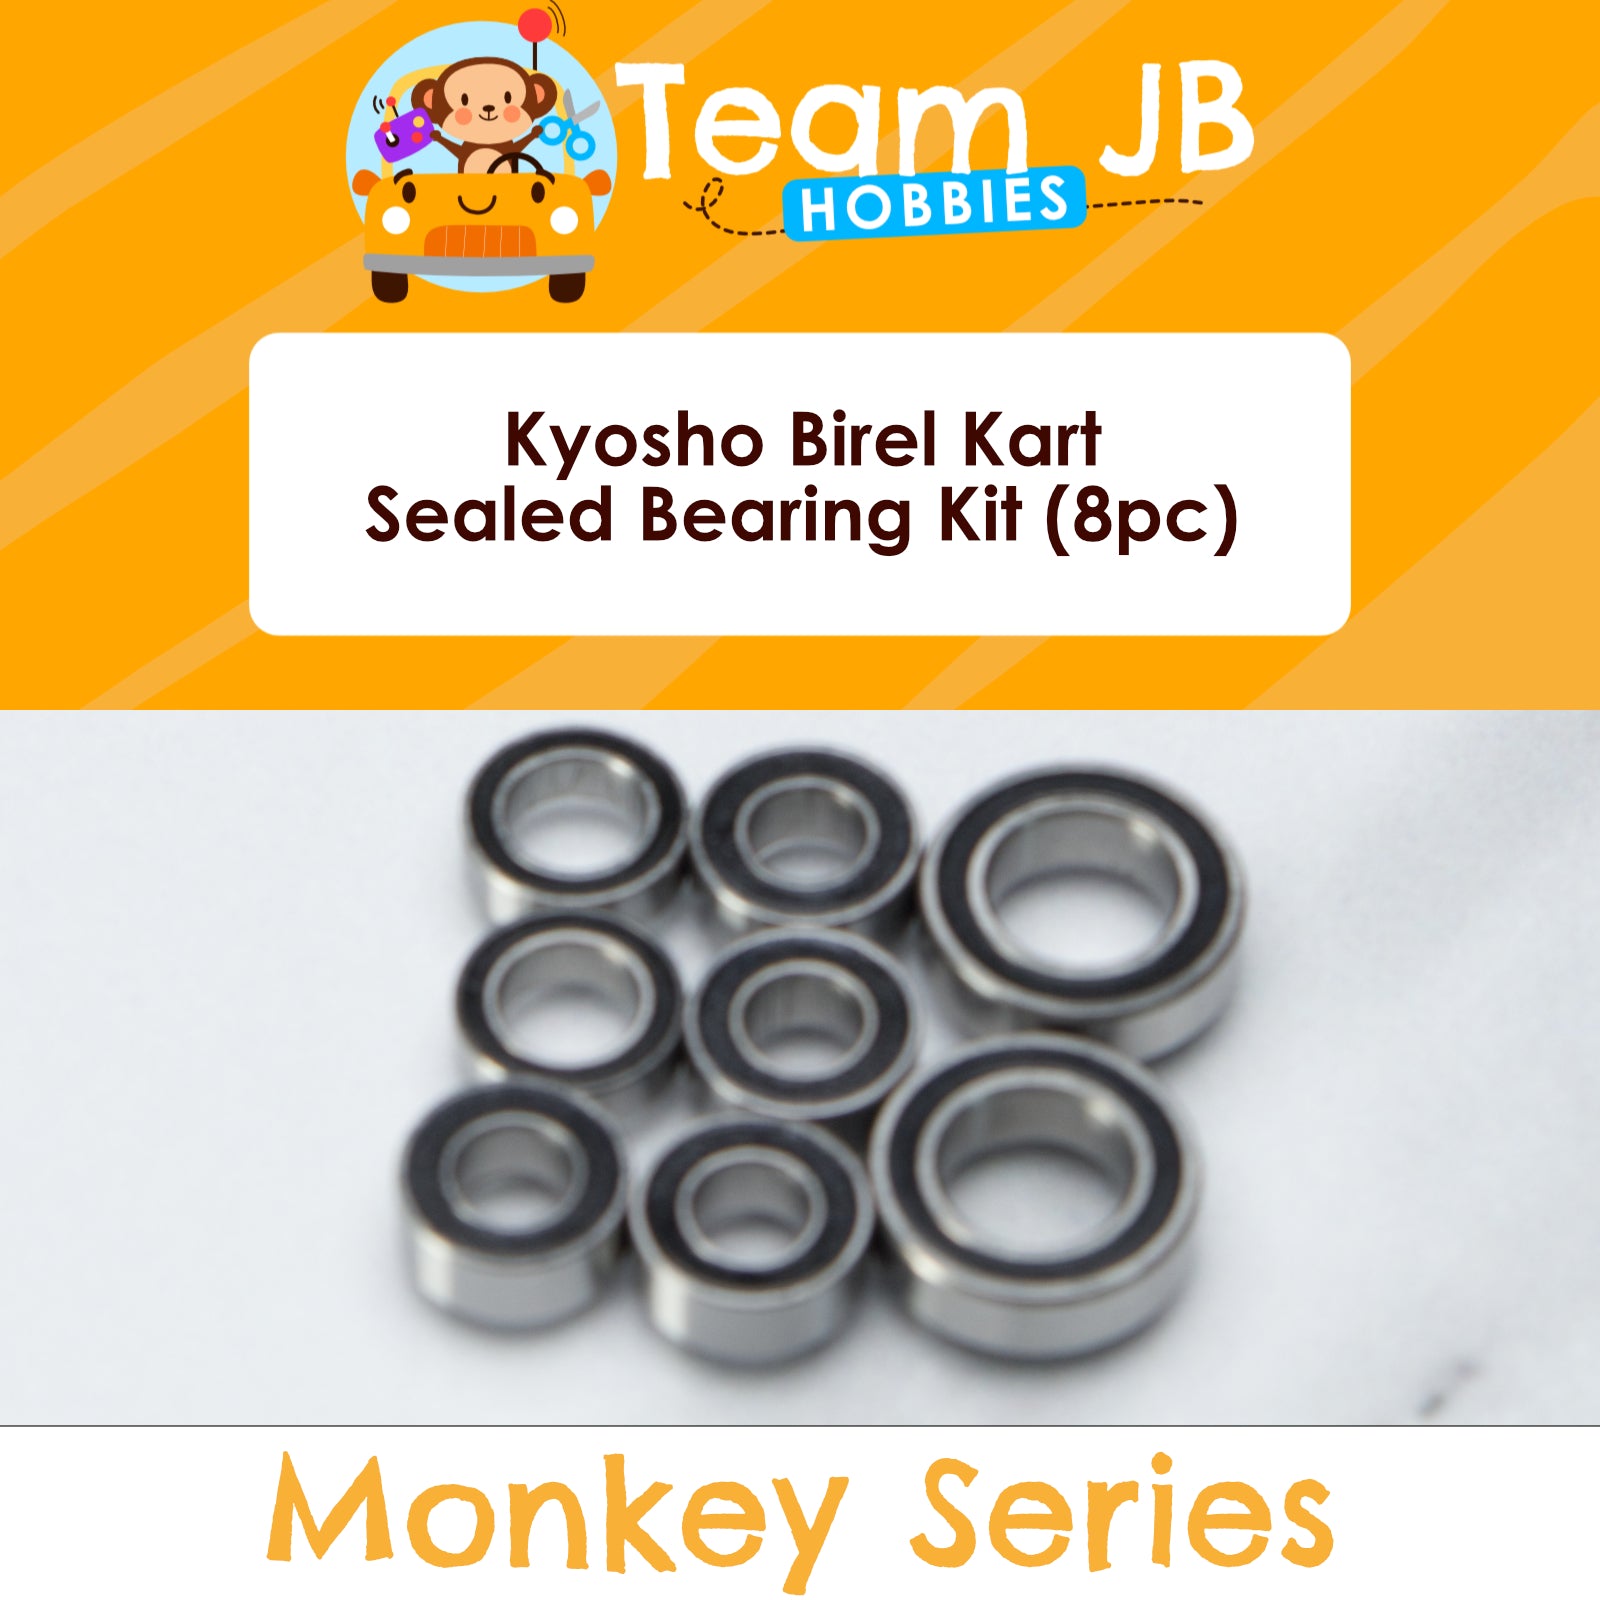 Kyosho Birel Kart - Sealed Bearing Kit